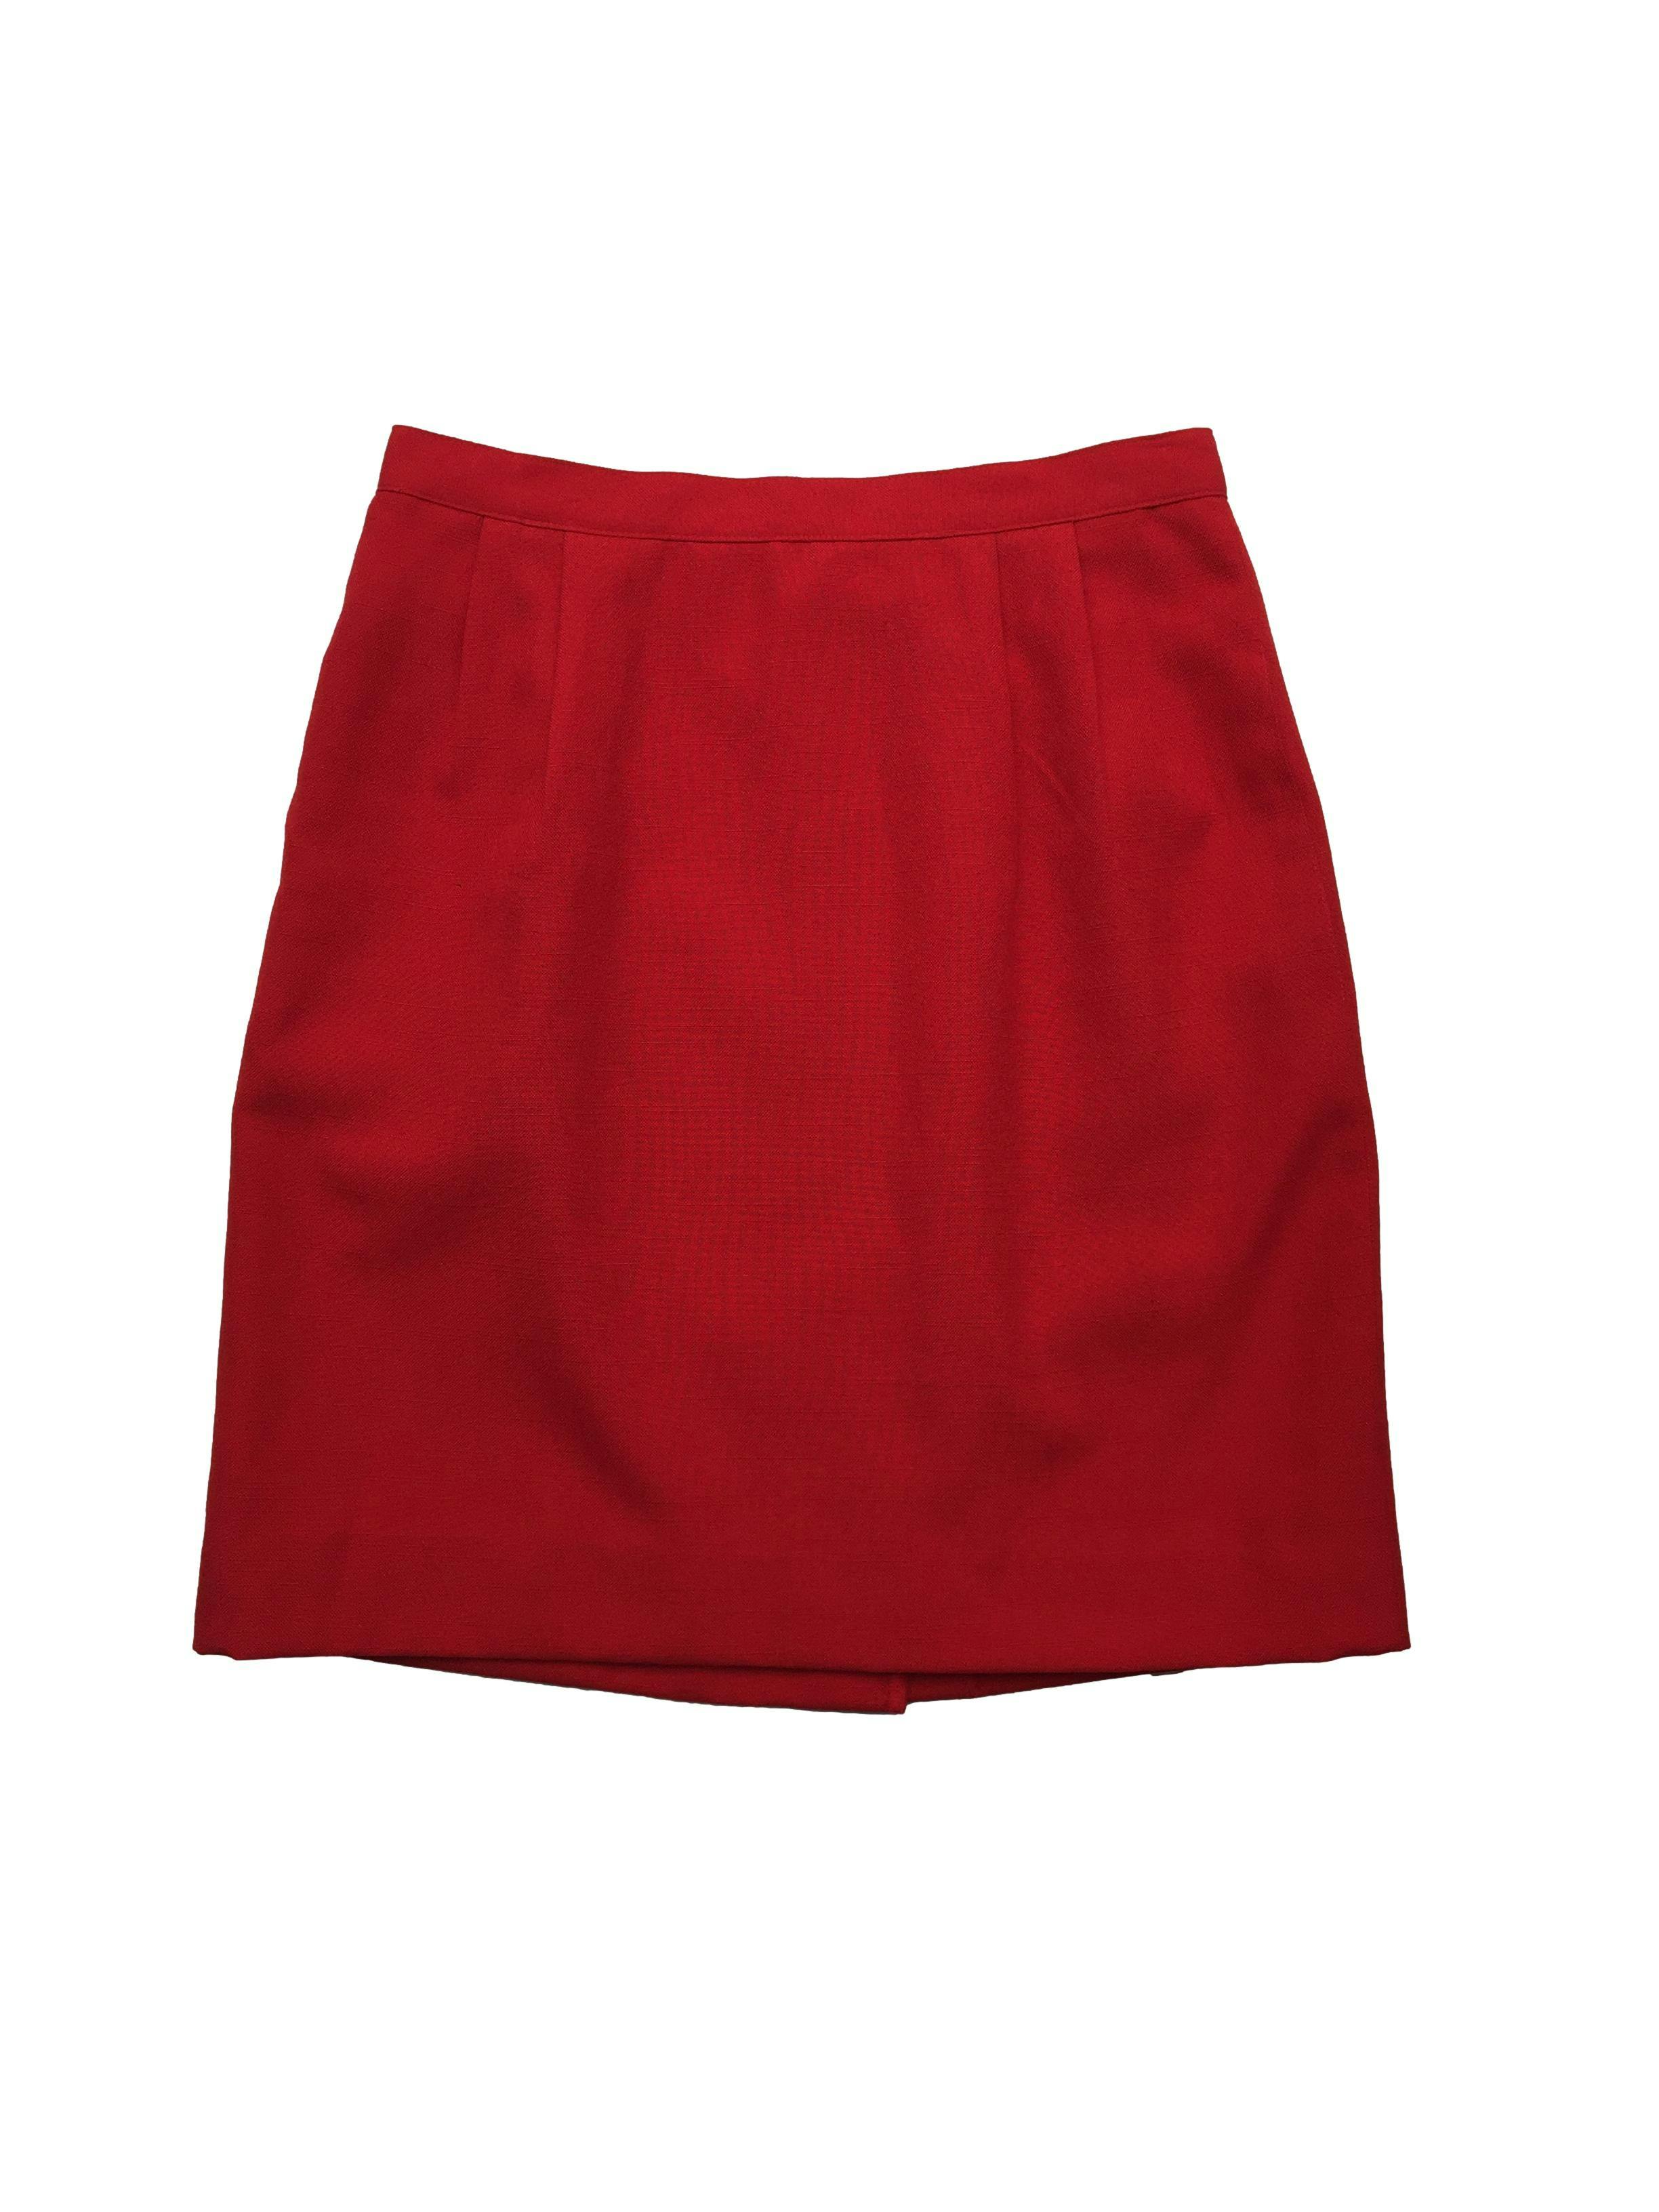 Falda lapiz Le Suit Petite roja con forro, pinzas, bolsillos laterales, abertura y cierre posterior. Cintura 70cm, Largo 50cm.